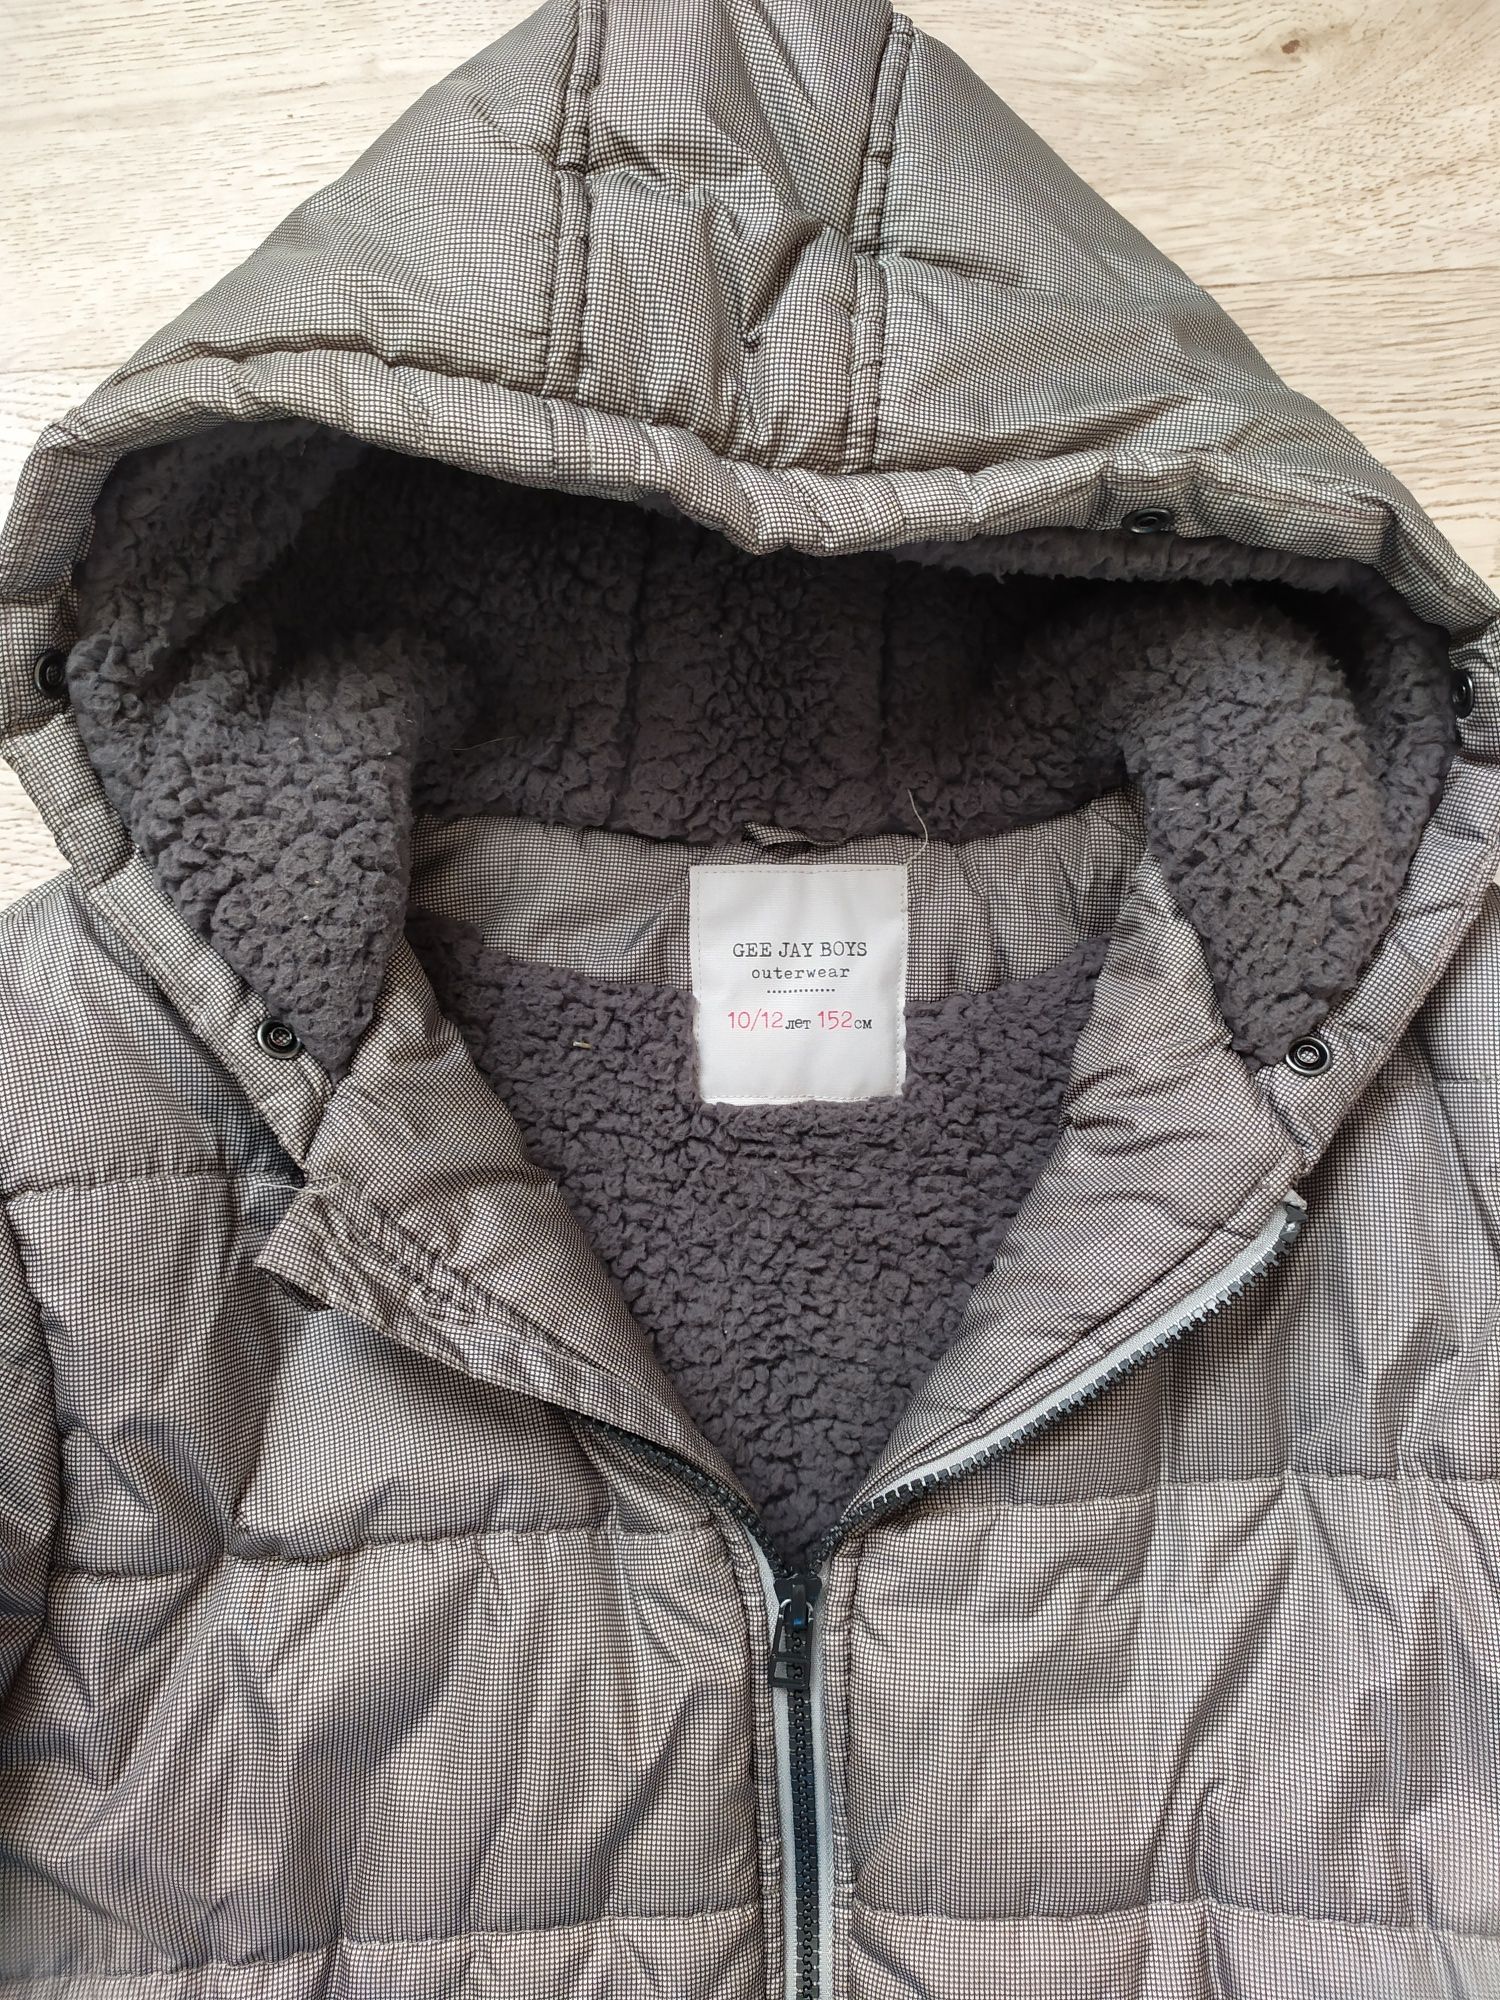 Теплая зимняя куртка на мальчика/подростка (152 см), лёгкая по весу